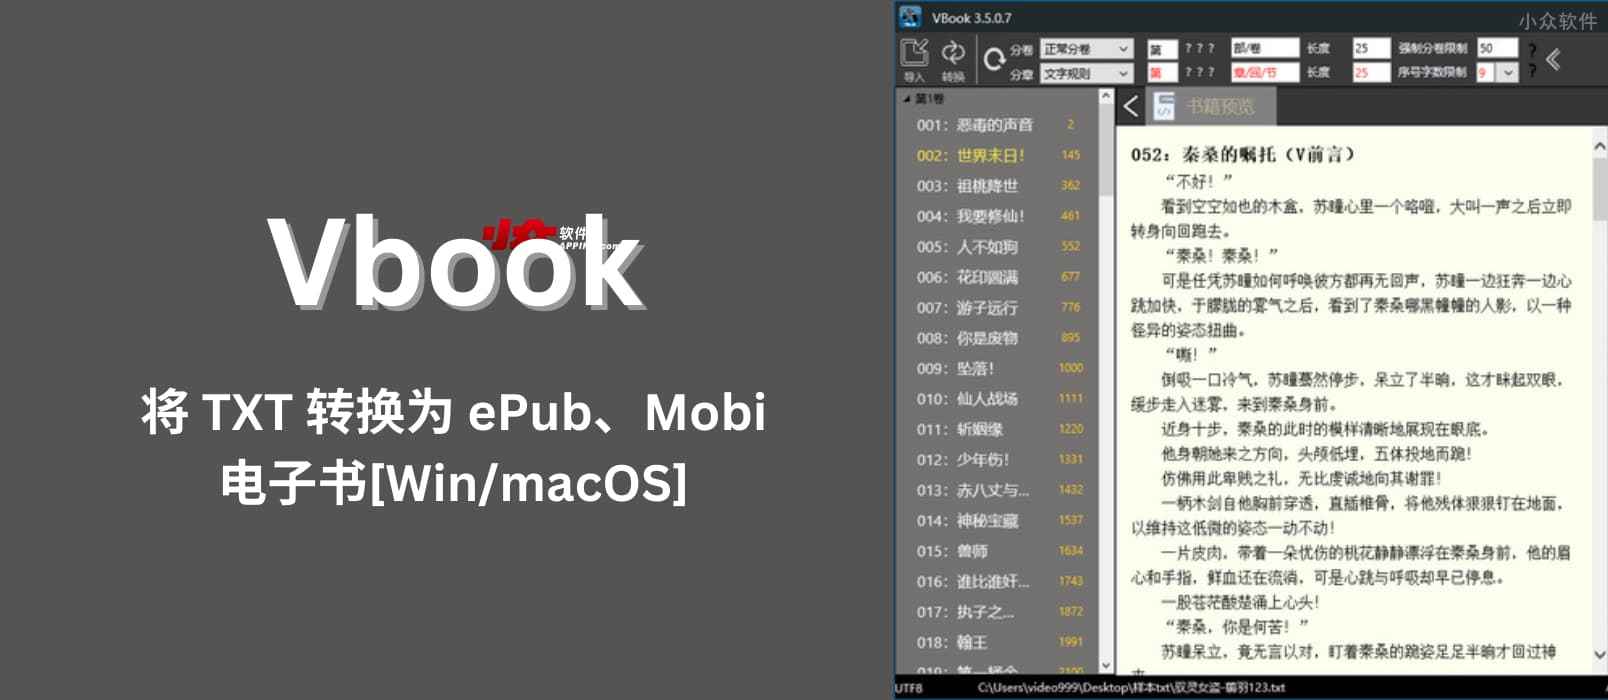 Vbook - 将 TXT 转换为 ePub、Mobi 电子书格式，支持分卷、目录、封面、行距尺寸等[Win/macOS]